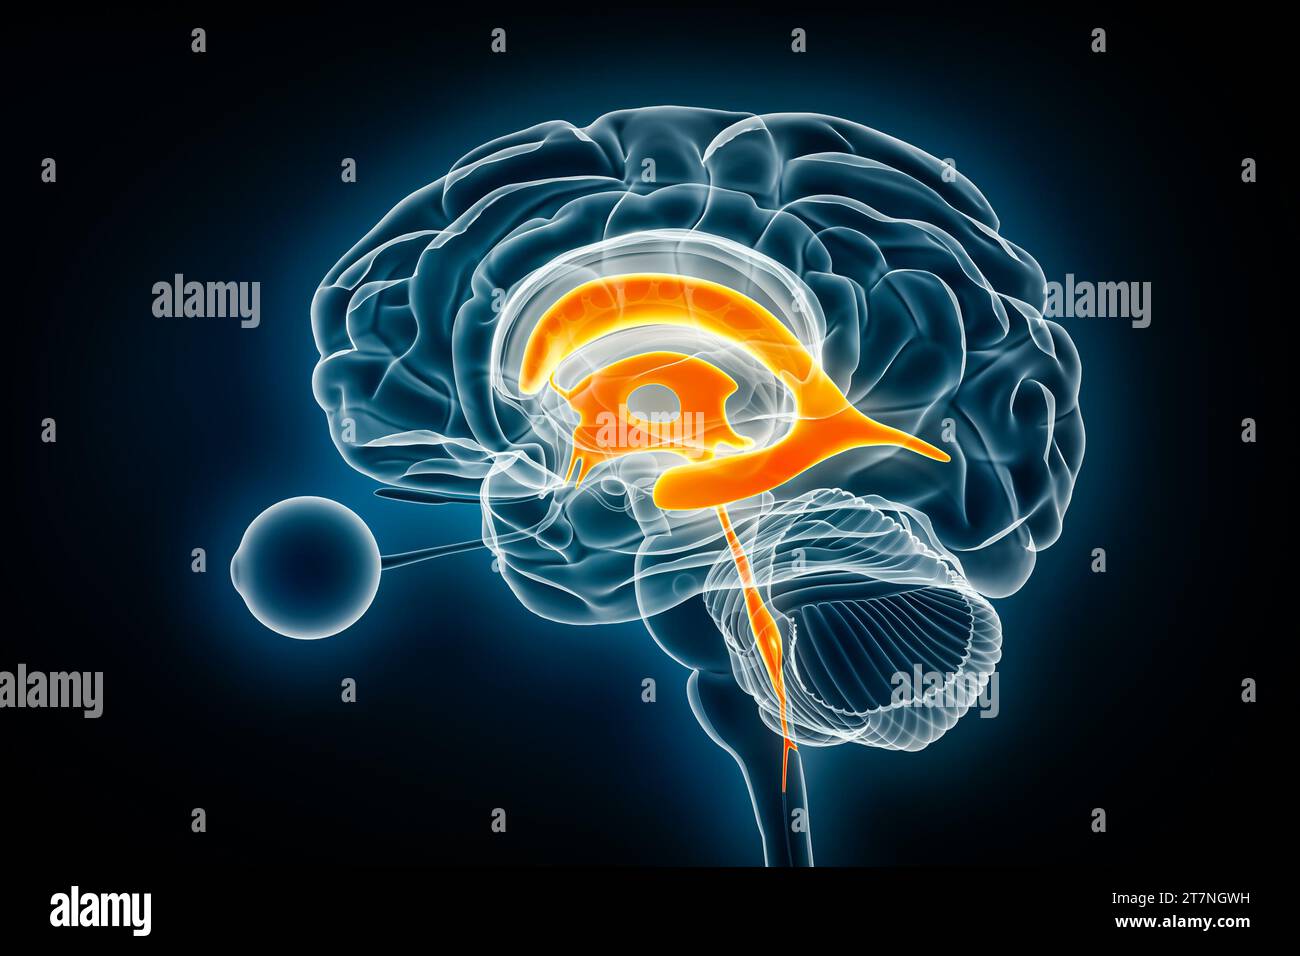 Visualizzazione a raggi X laterale ventricoli e acquedotto cerebrale illustrazione del rendering 3D. Anatomia del cervello umano e del sistema ventricolare, medico, sanitario, scienc Foto Stock